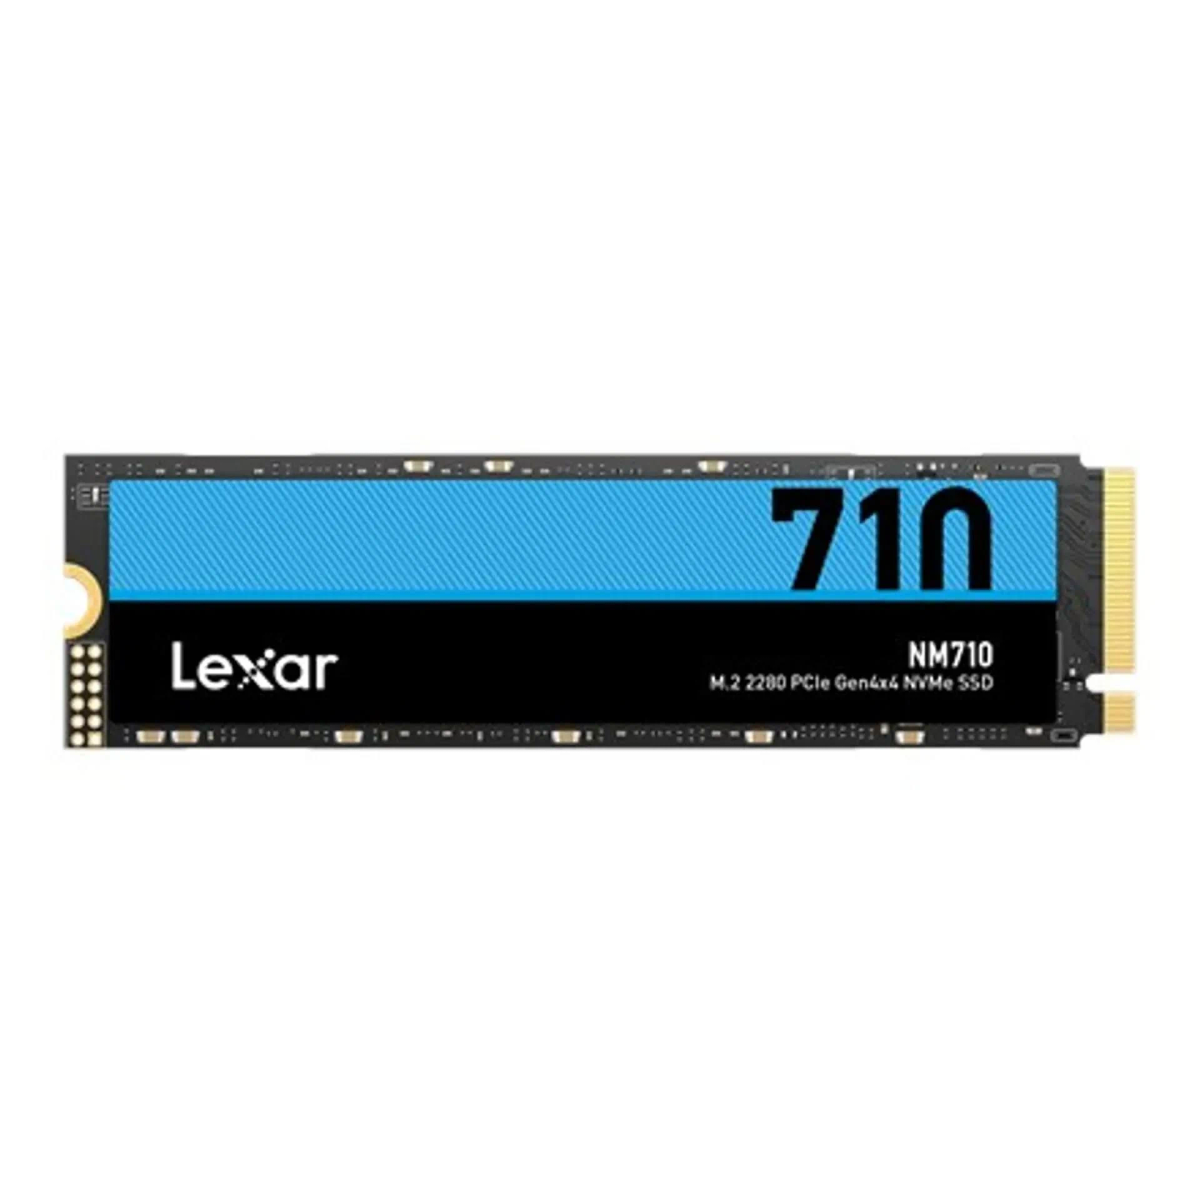 intern LNM710X002T-RNNNG, SSD, TB, LEXAR 2